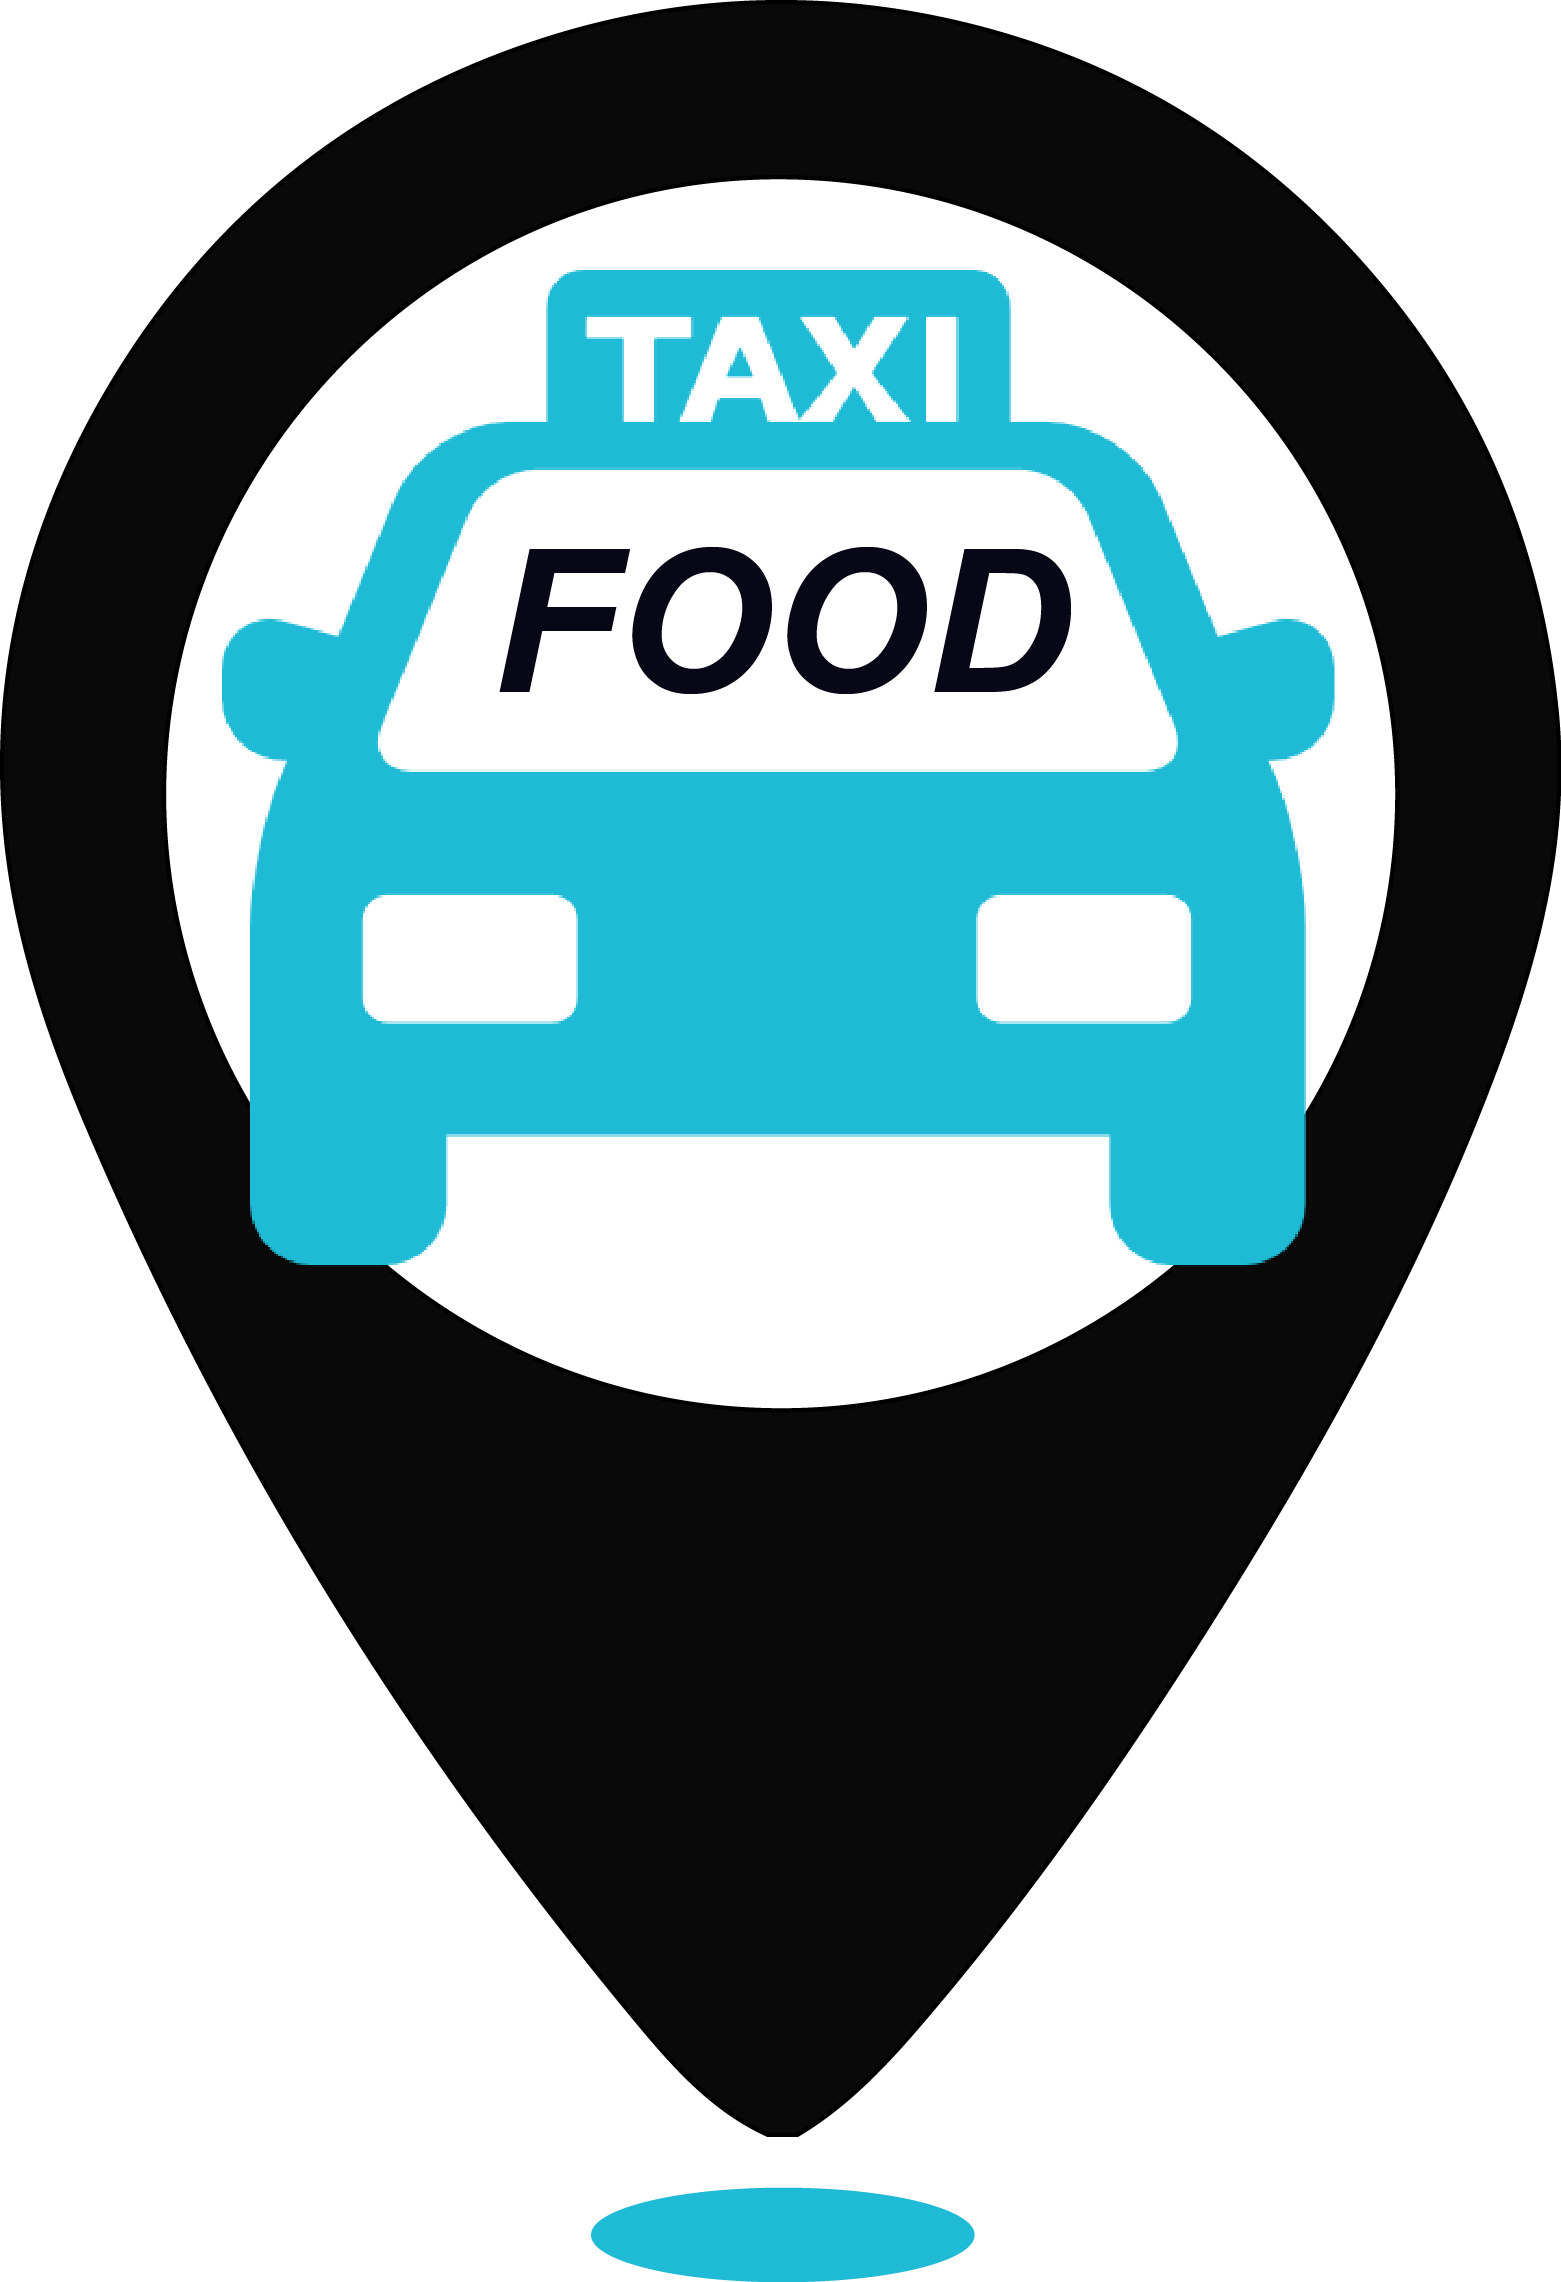 Логотип такси. Фуд такси. Taxi food логотип. Такси еда СПБ. Фуд такси доставка